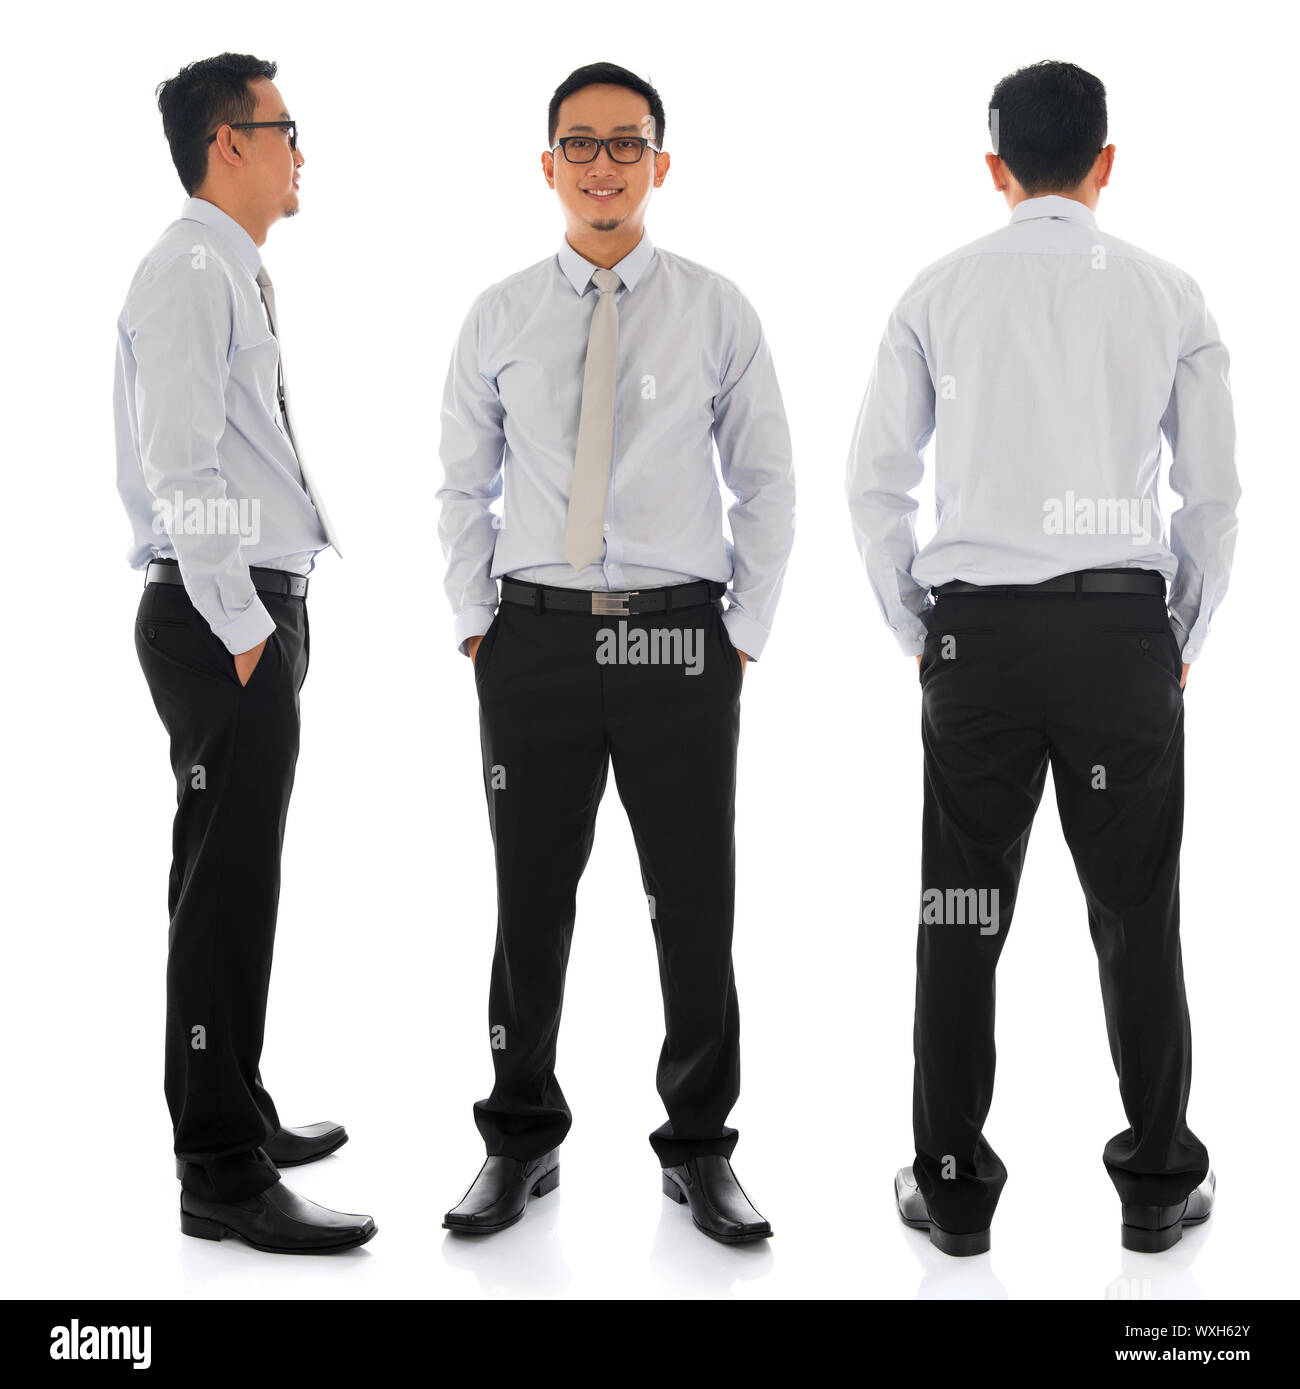 Cuerpo completo joven empresario asiático en otro ángulo, la vista frontal, lateral y posterior. Se encuentran aisladas sobre fondo blanco. Foto de stock